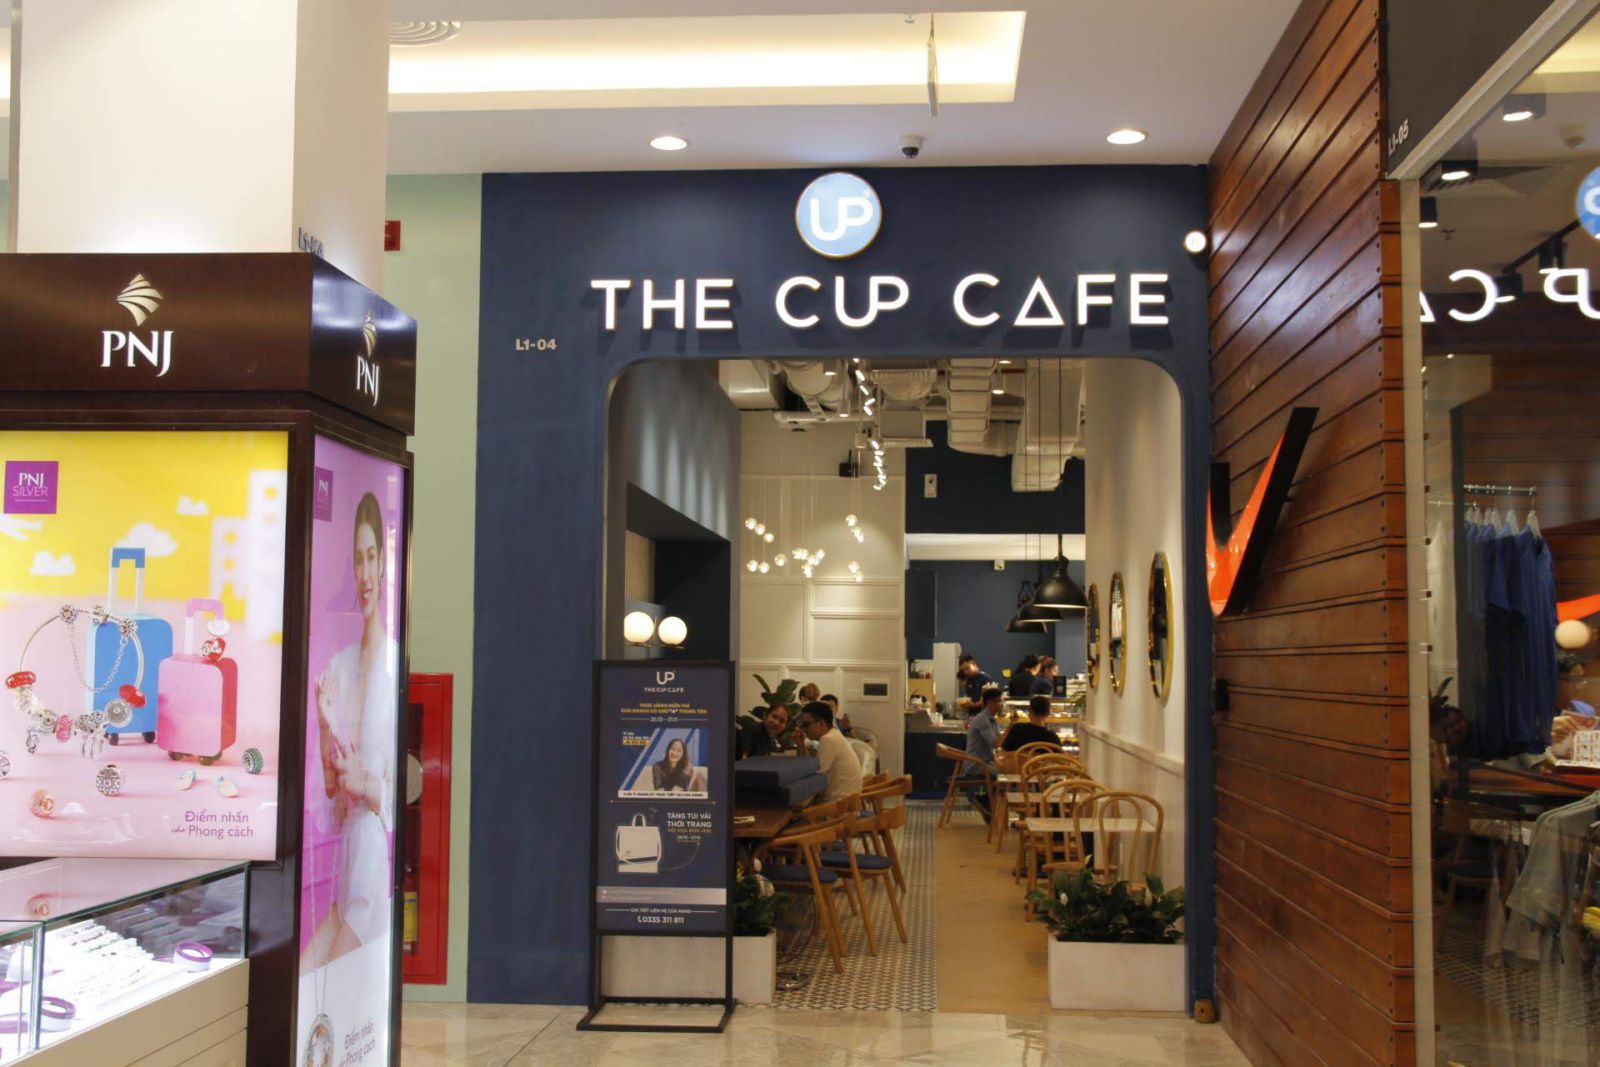 pcm cung cấp nội thất cho chi nhánh the cup cafe bình dương